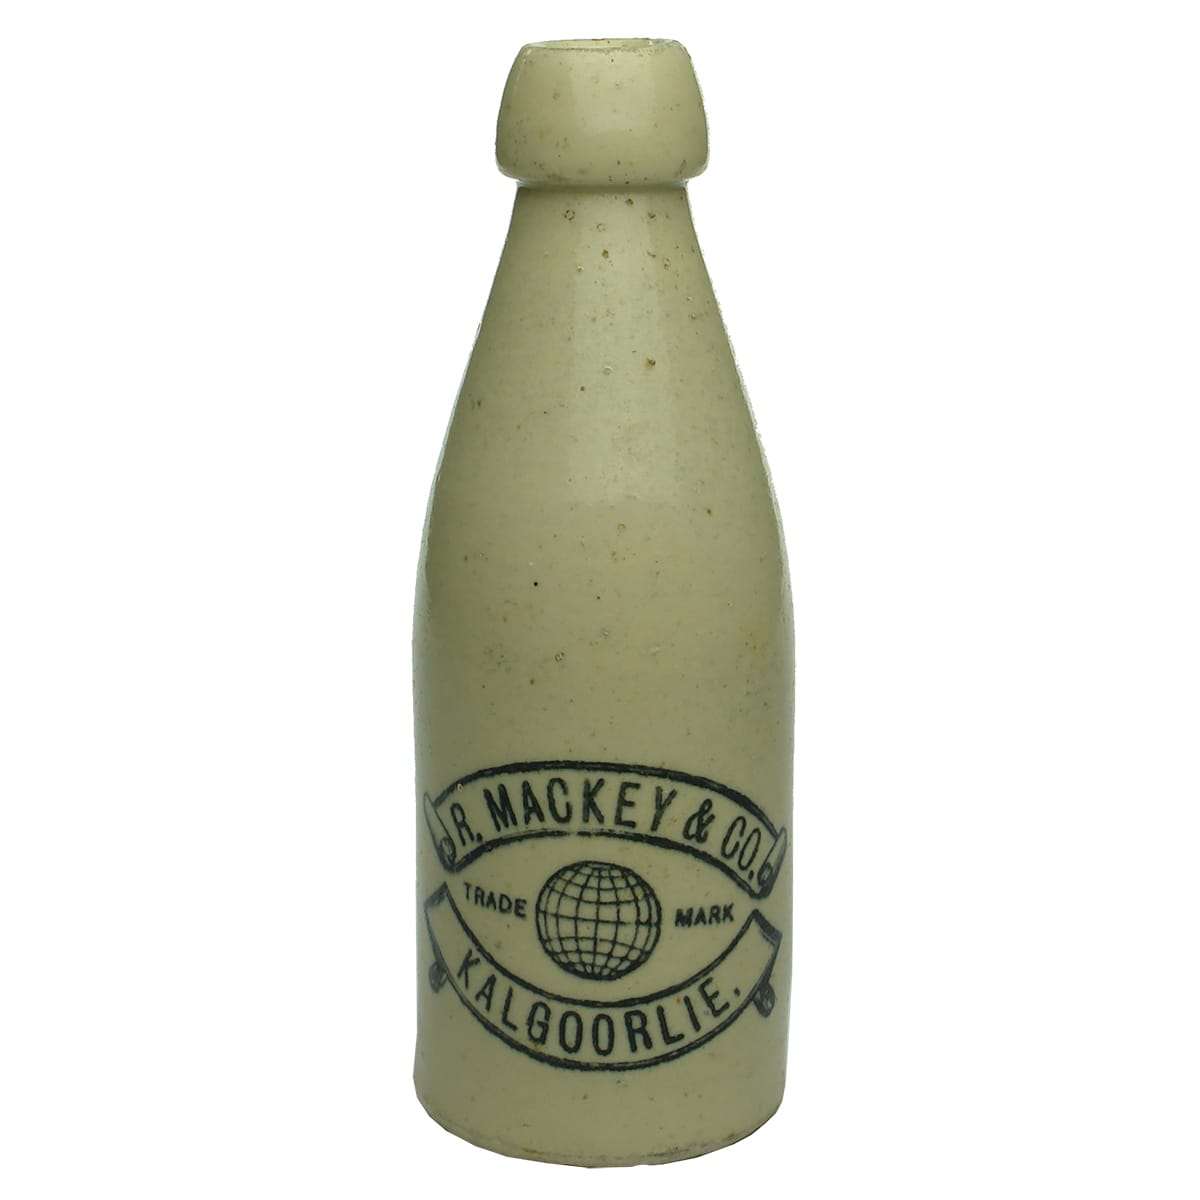 Ginger Beer. R. Mackey & Co., Kalgoorlie. Champagne. All White. Cork Stoppered. (Western Australia)